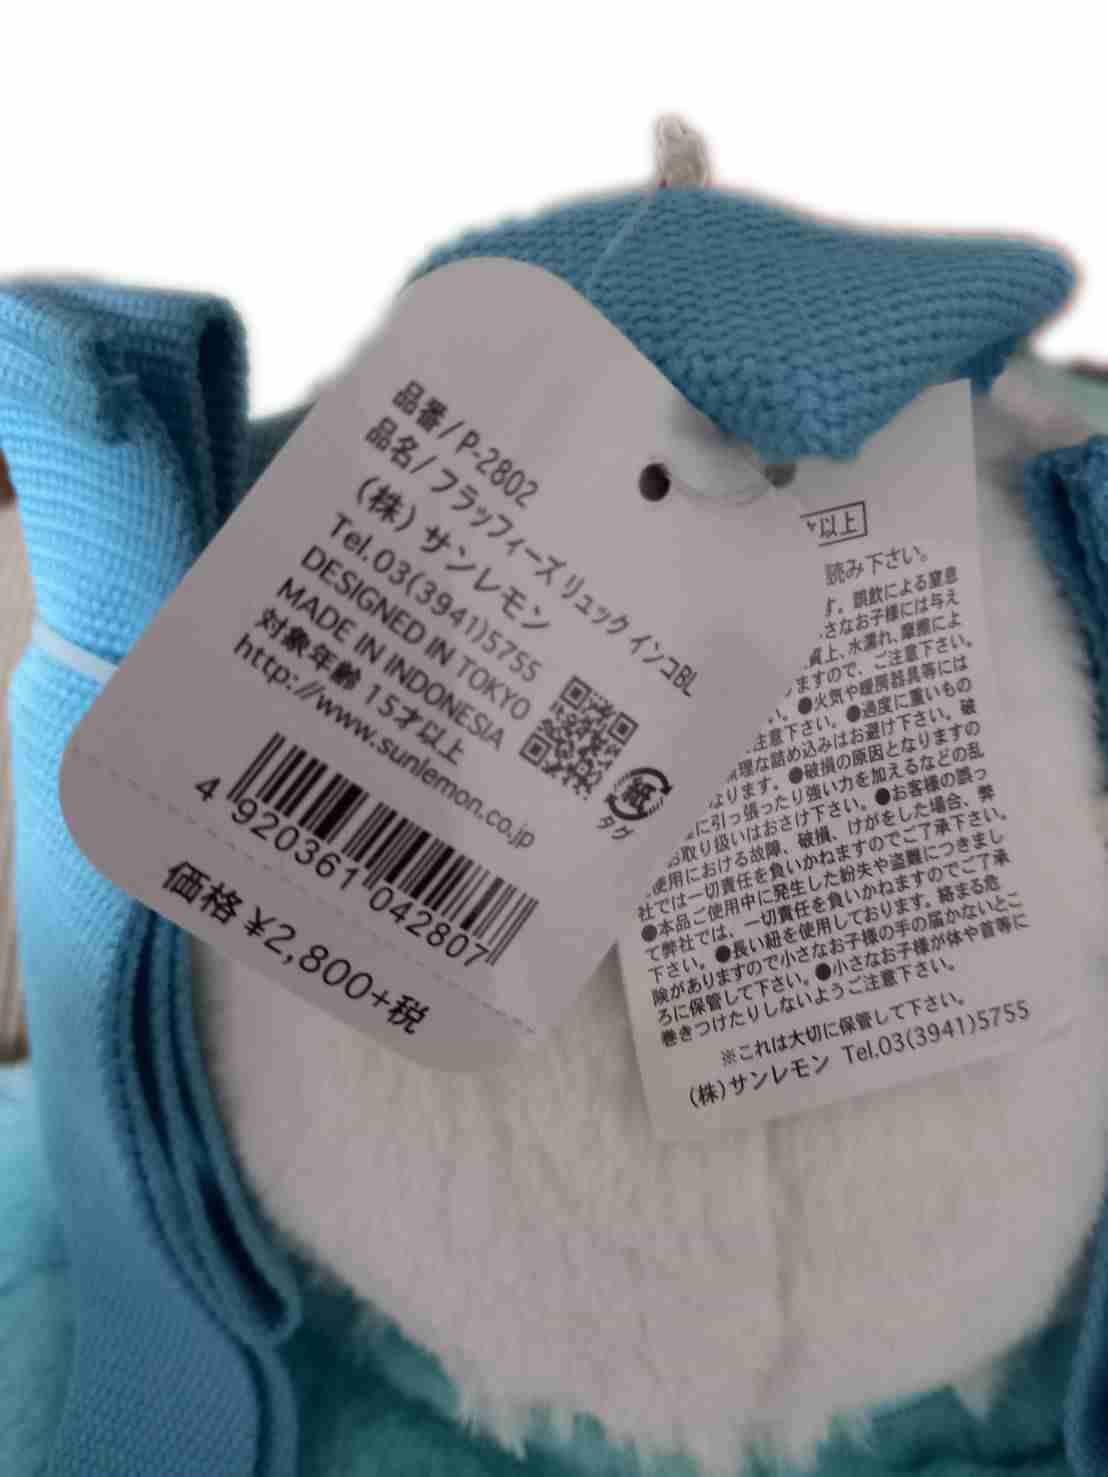 現貨 鸚鵡絨毛小背包 Sunlemon 日本正版授權 絨毛 兒童 背包 後背包 雙肩背包 玩偶 娃娃 3歲 兒童